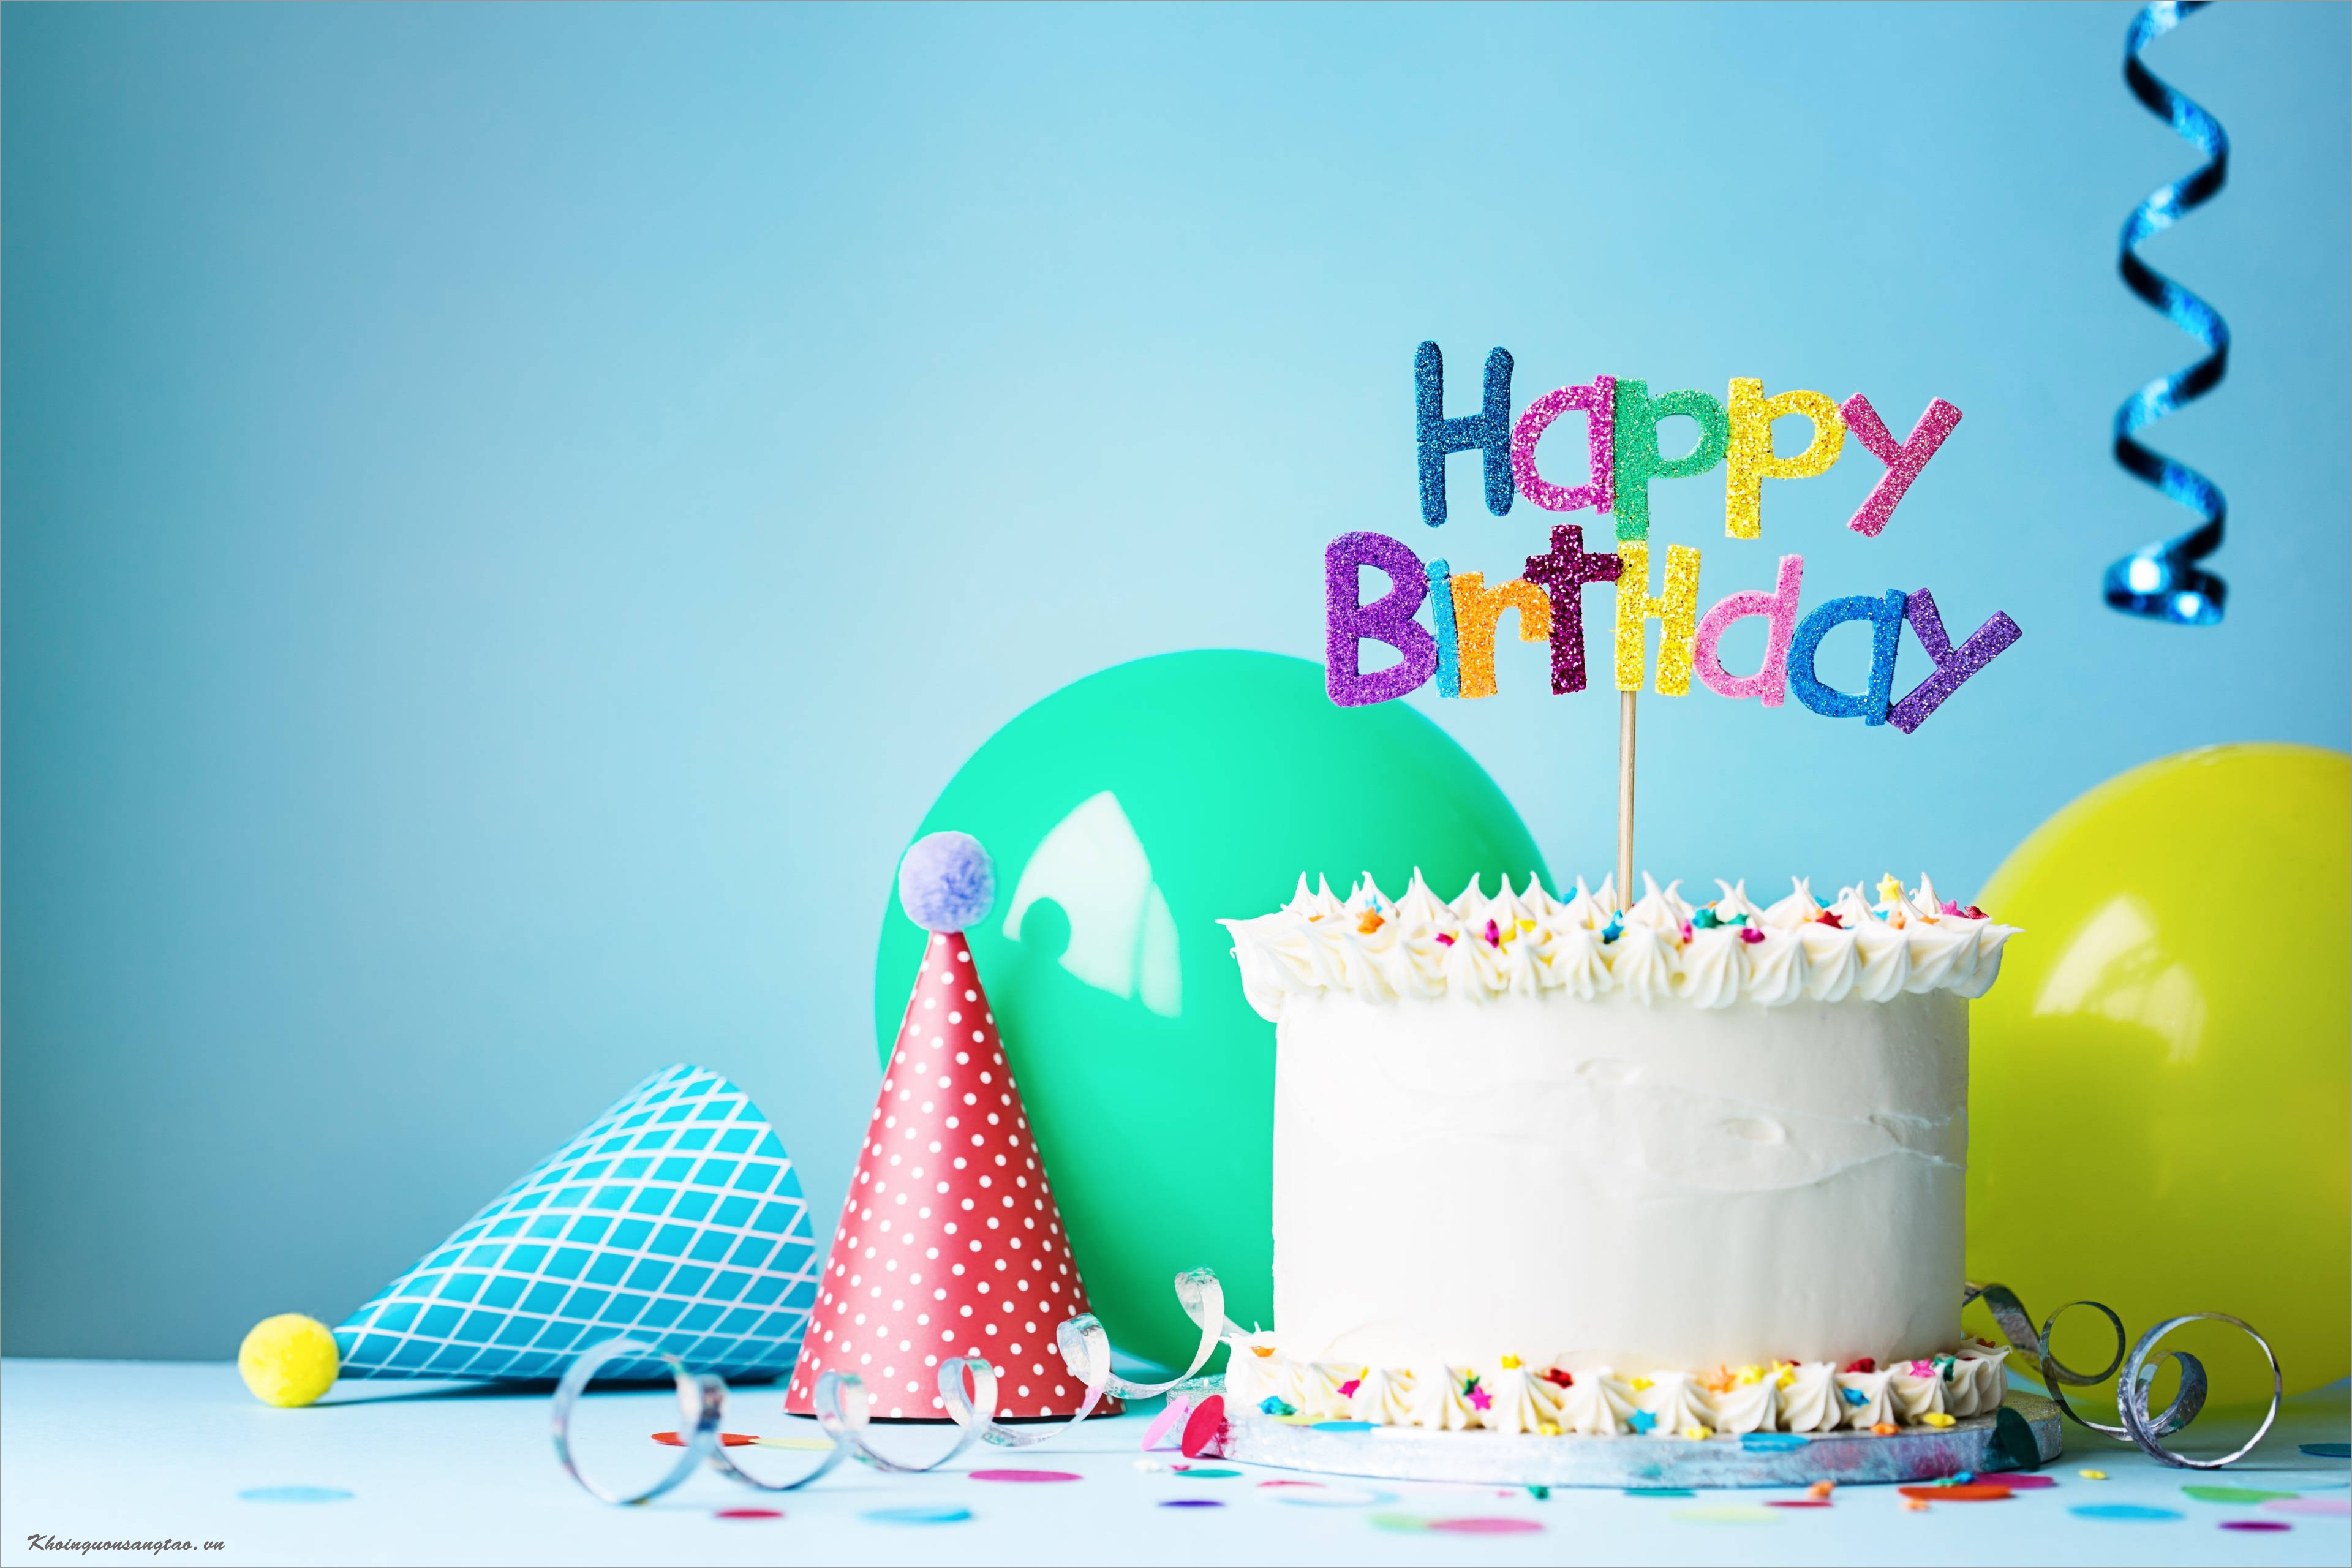 Top 20 hình ảnh chúc mừng sinh nhật bá đạo chất trên cành quất